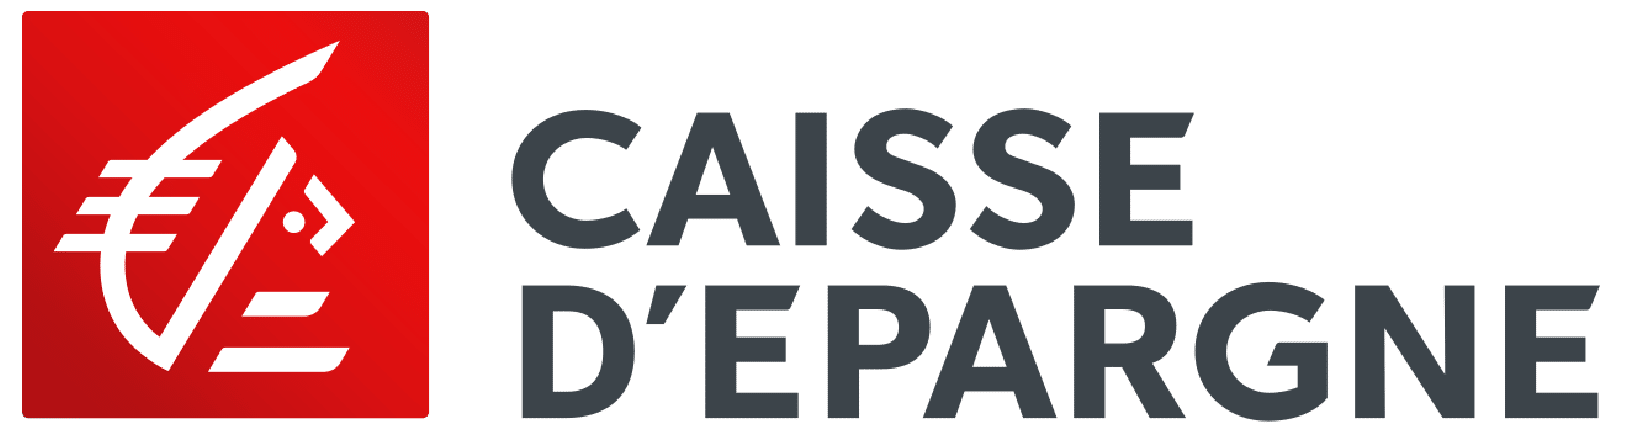 Logo partenaires_Caisse d'Epargne-logo